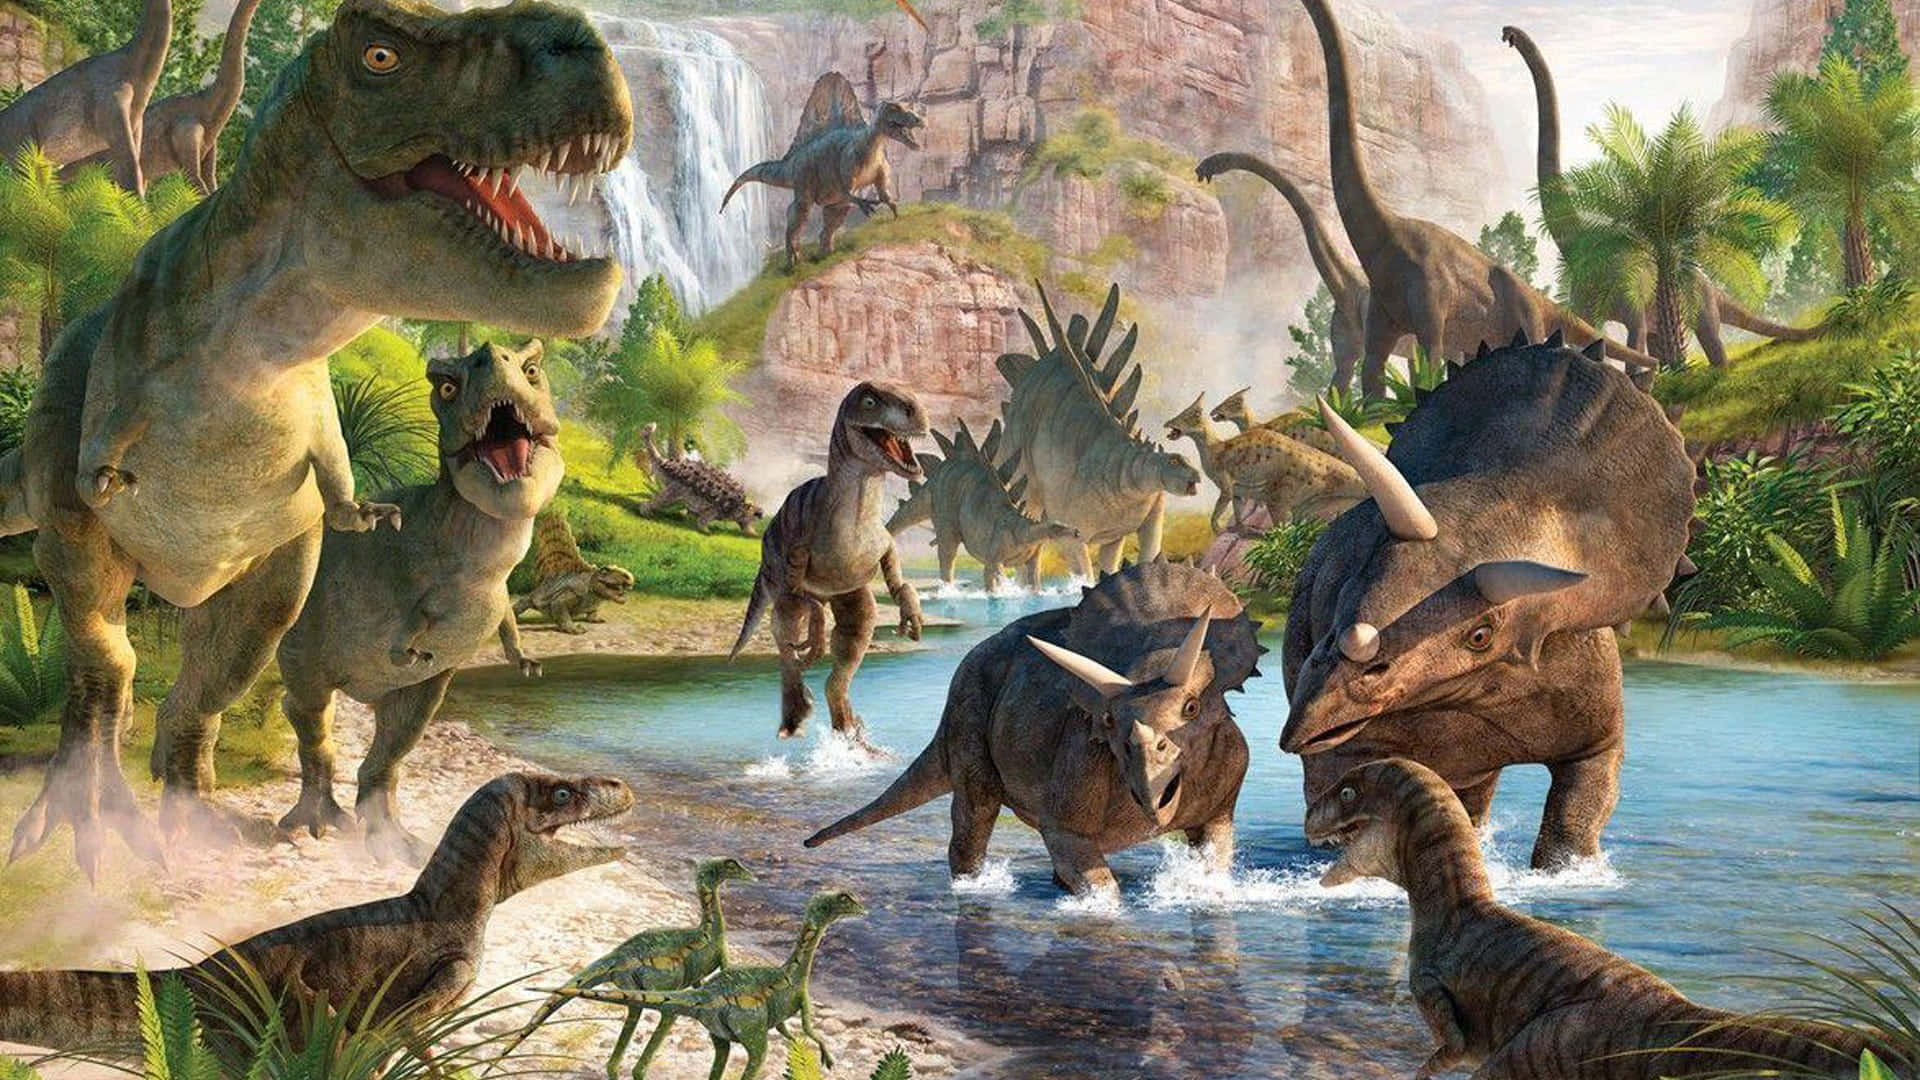 Imagende Un Parque De Vida Salvaje De Dinosaurios Fantásticos